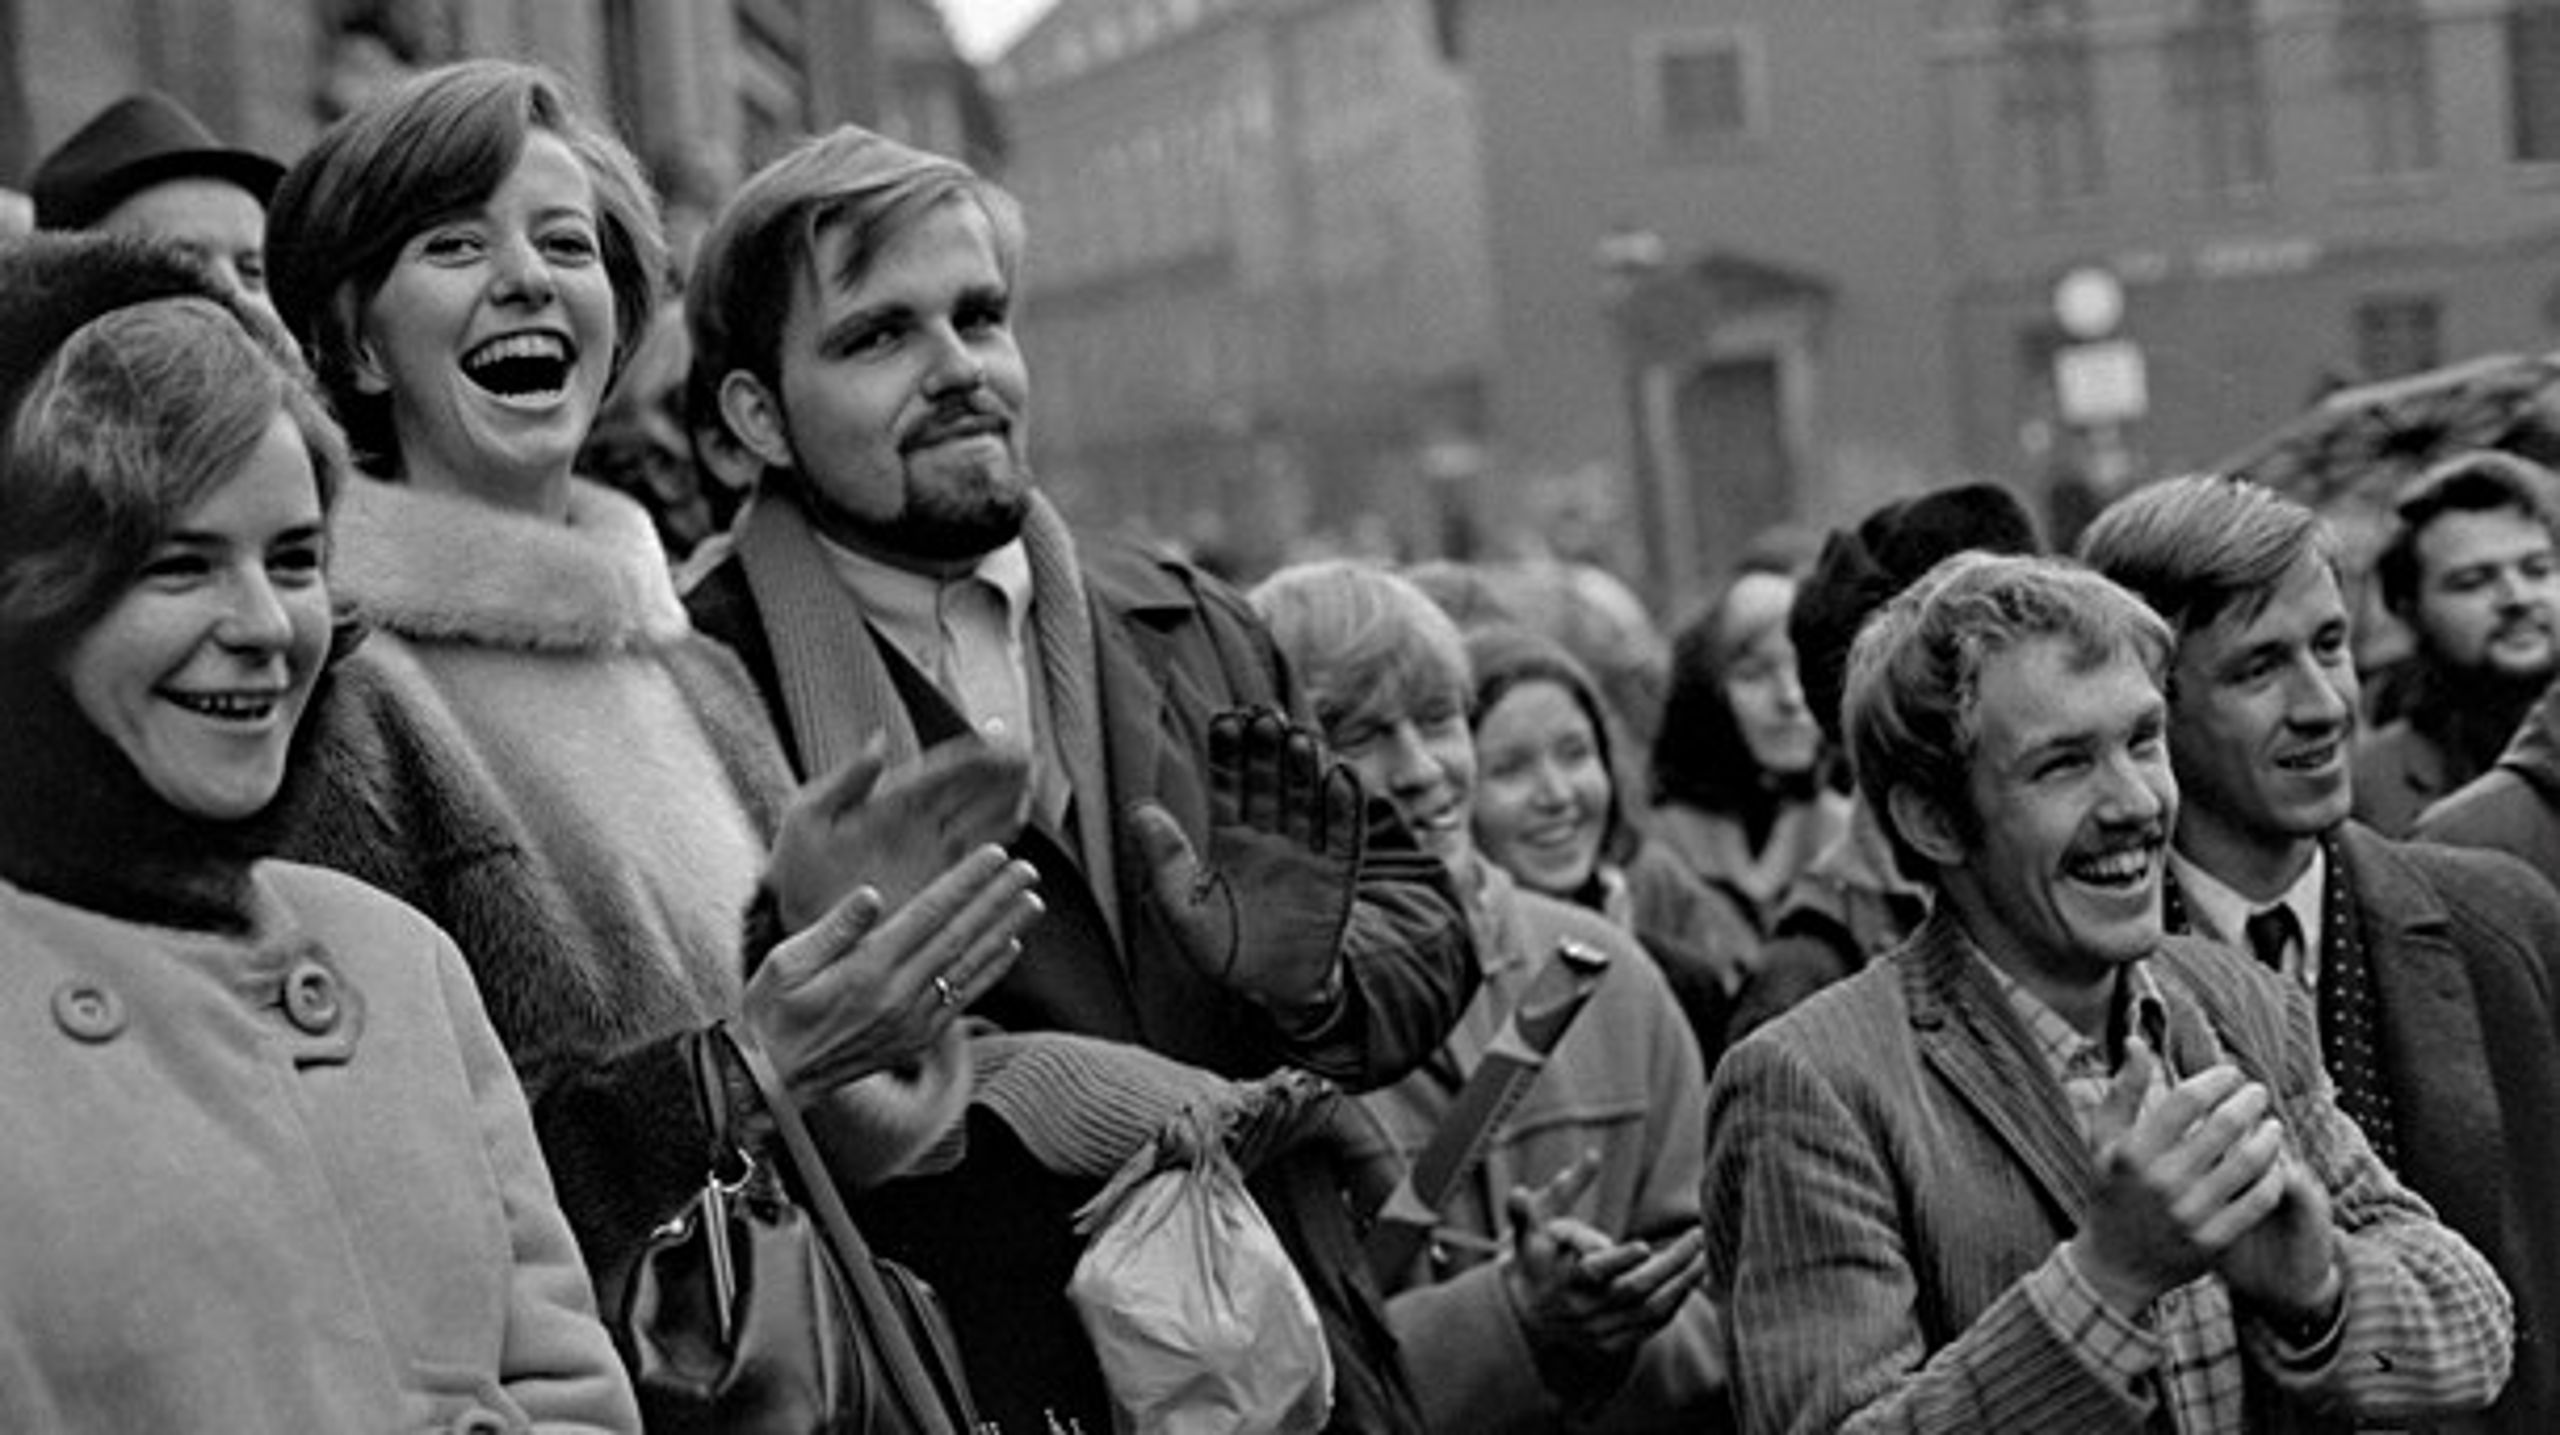 OPRØR: Københavns Universitets årsfest i maj 1968 udviklede sig til en happening, da de studerende overtog talerstolen.<u><br></u>